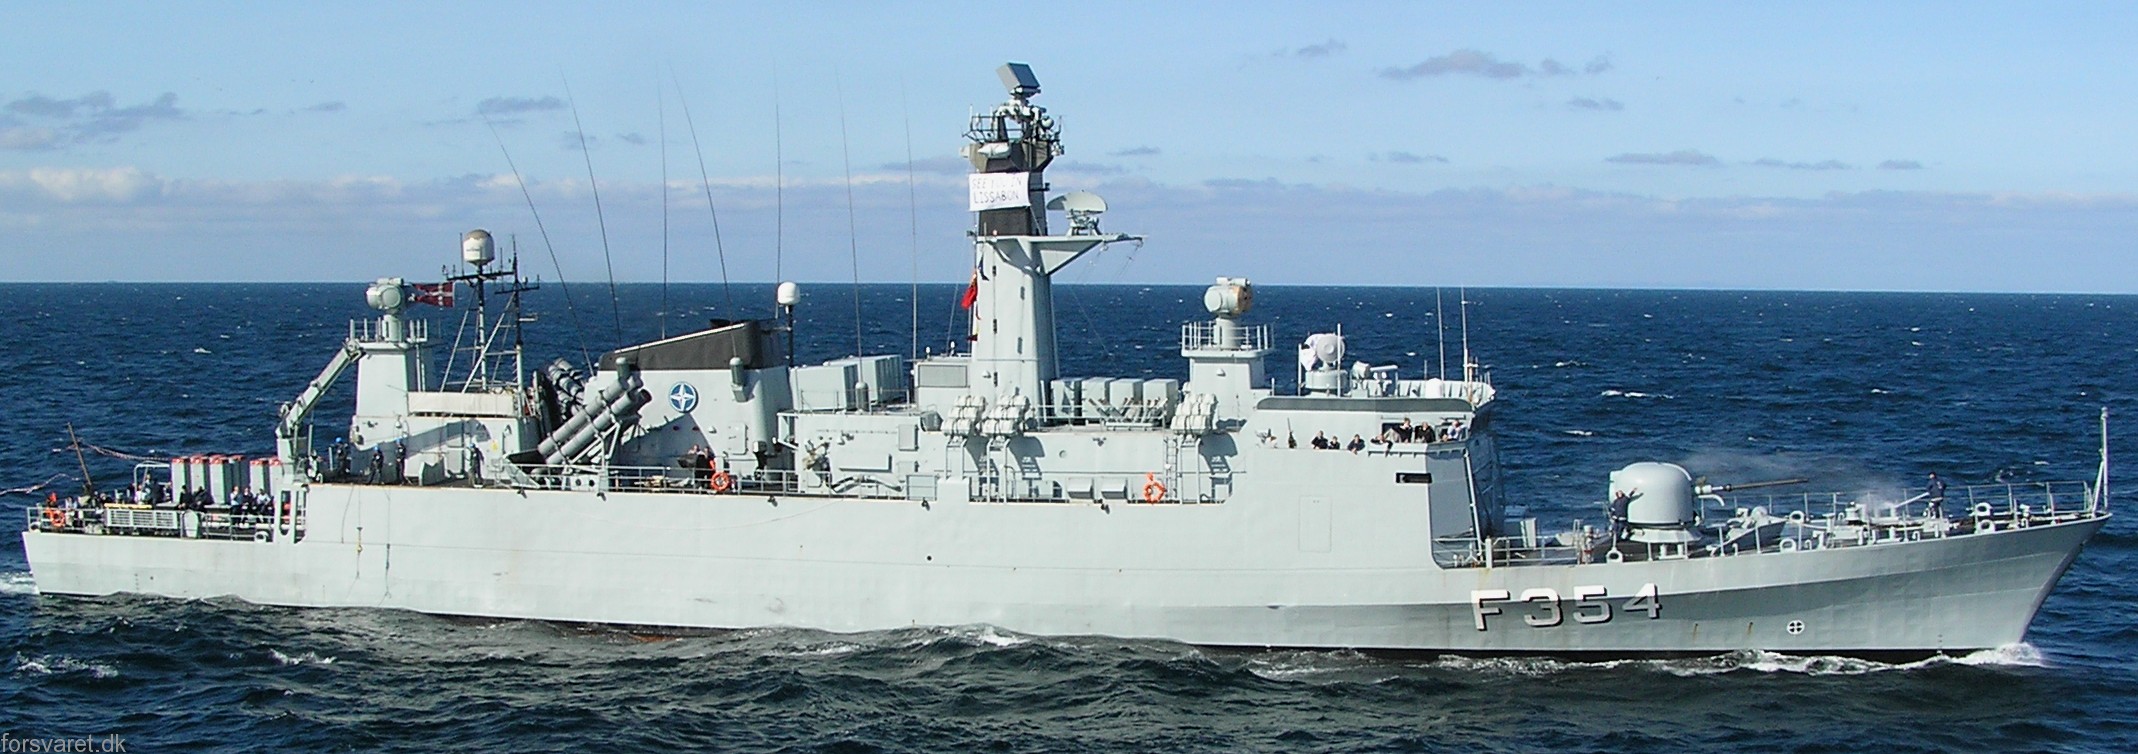 f-354 hdms niels juel class corvette royal danish navy kongelige danske marine kdm 113